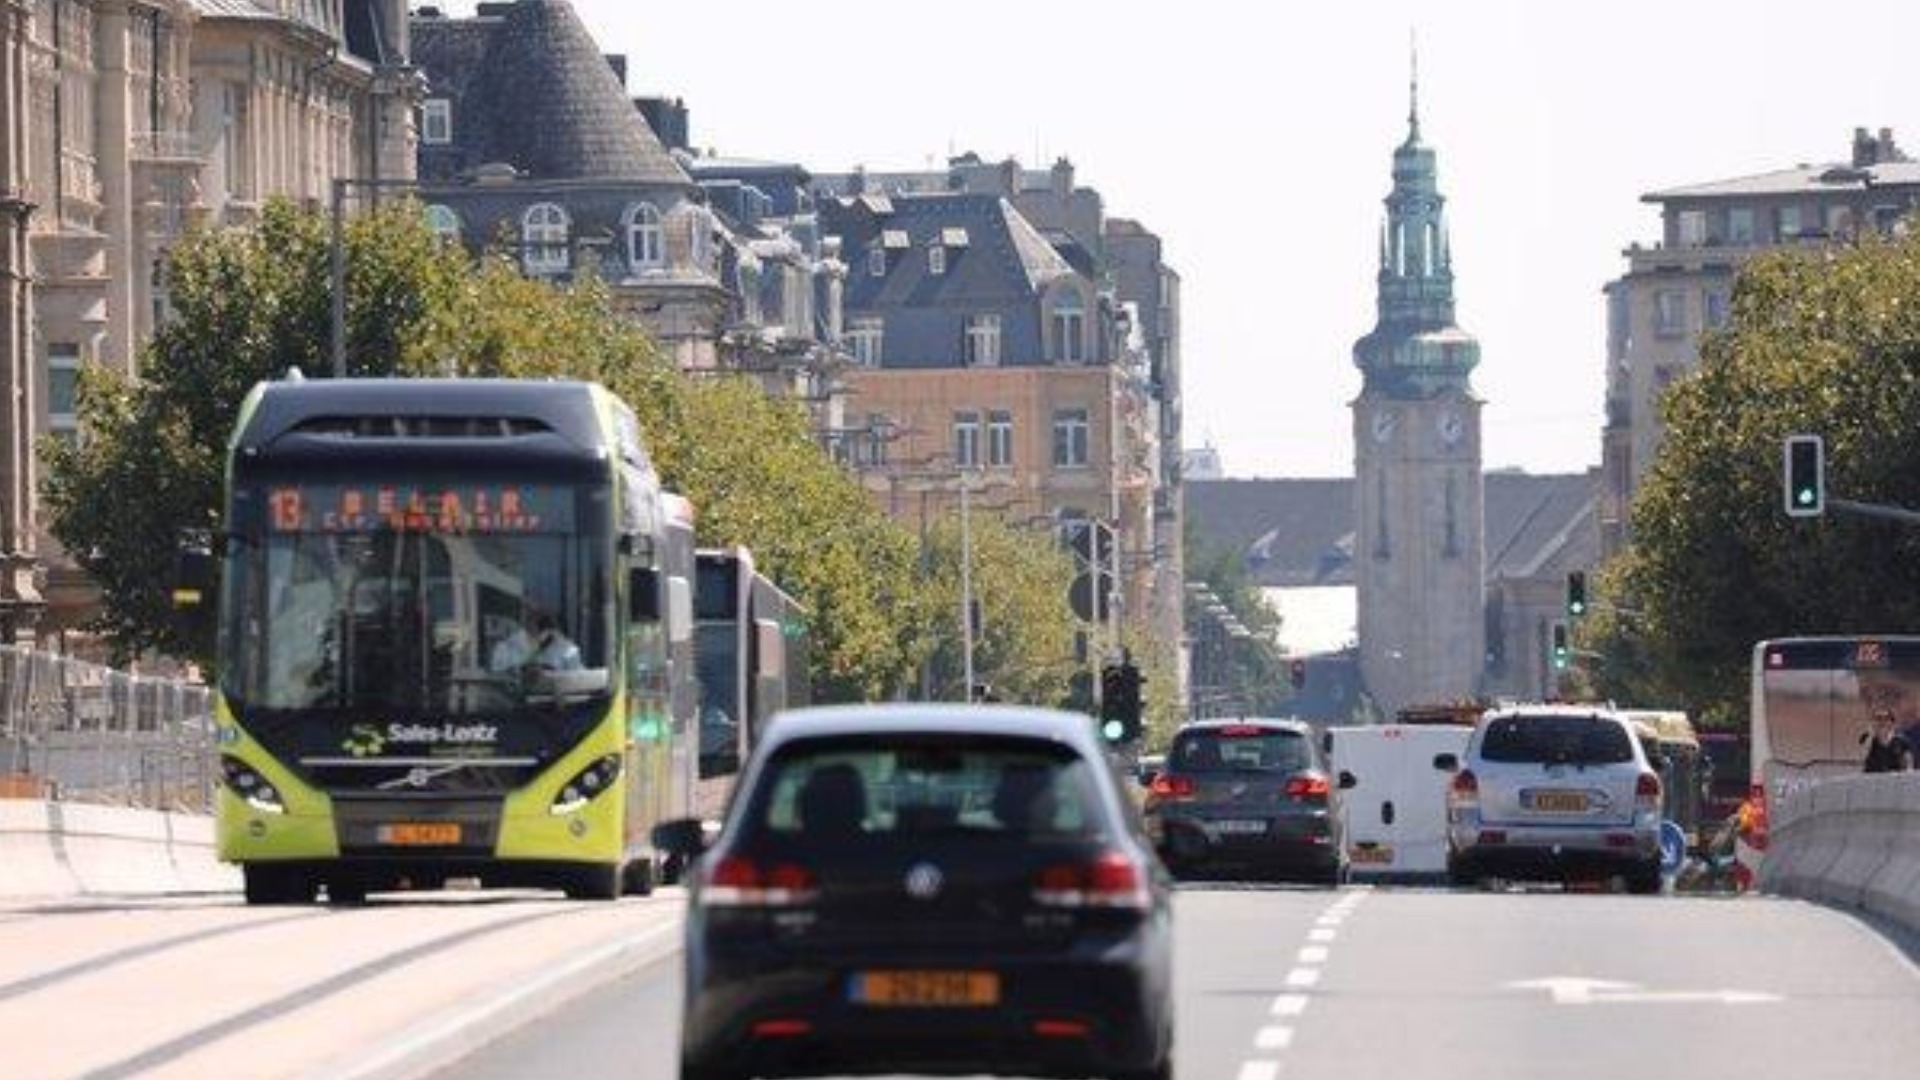  Luksemburg postaje prva zemlja u svijetu s besplatnim javnim prijevozom